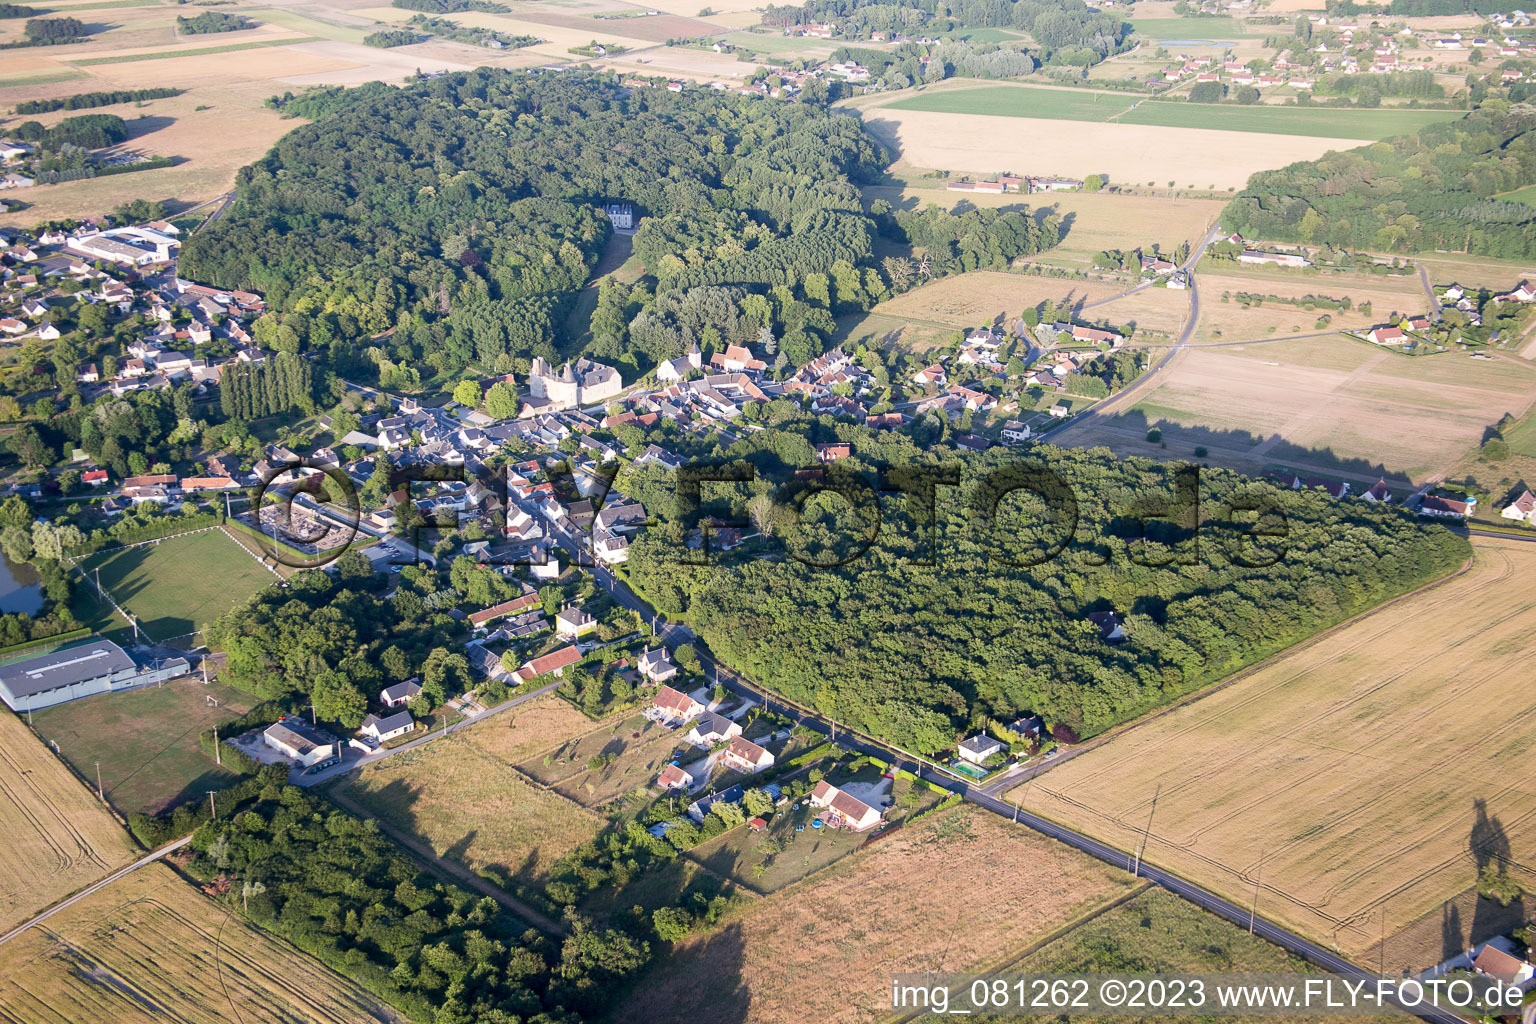 Vue aérienne de Fougères-sur-Bièvre dans le département Loir et Cher, France